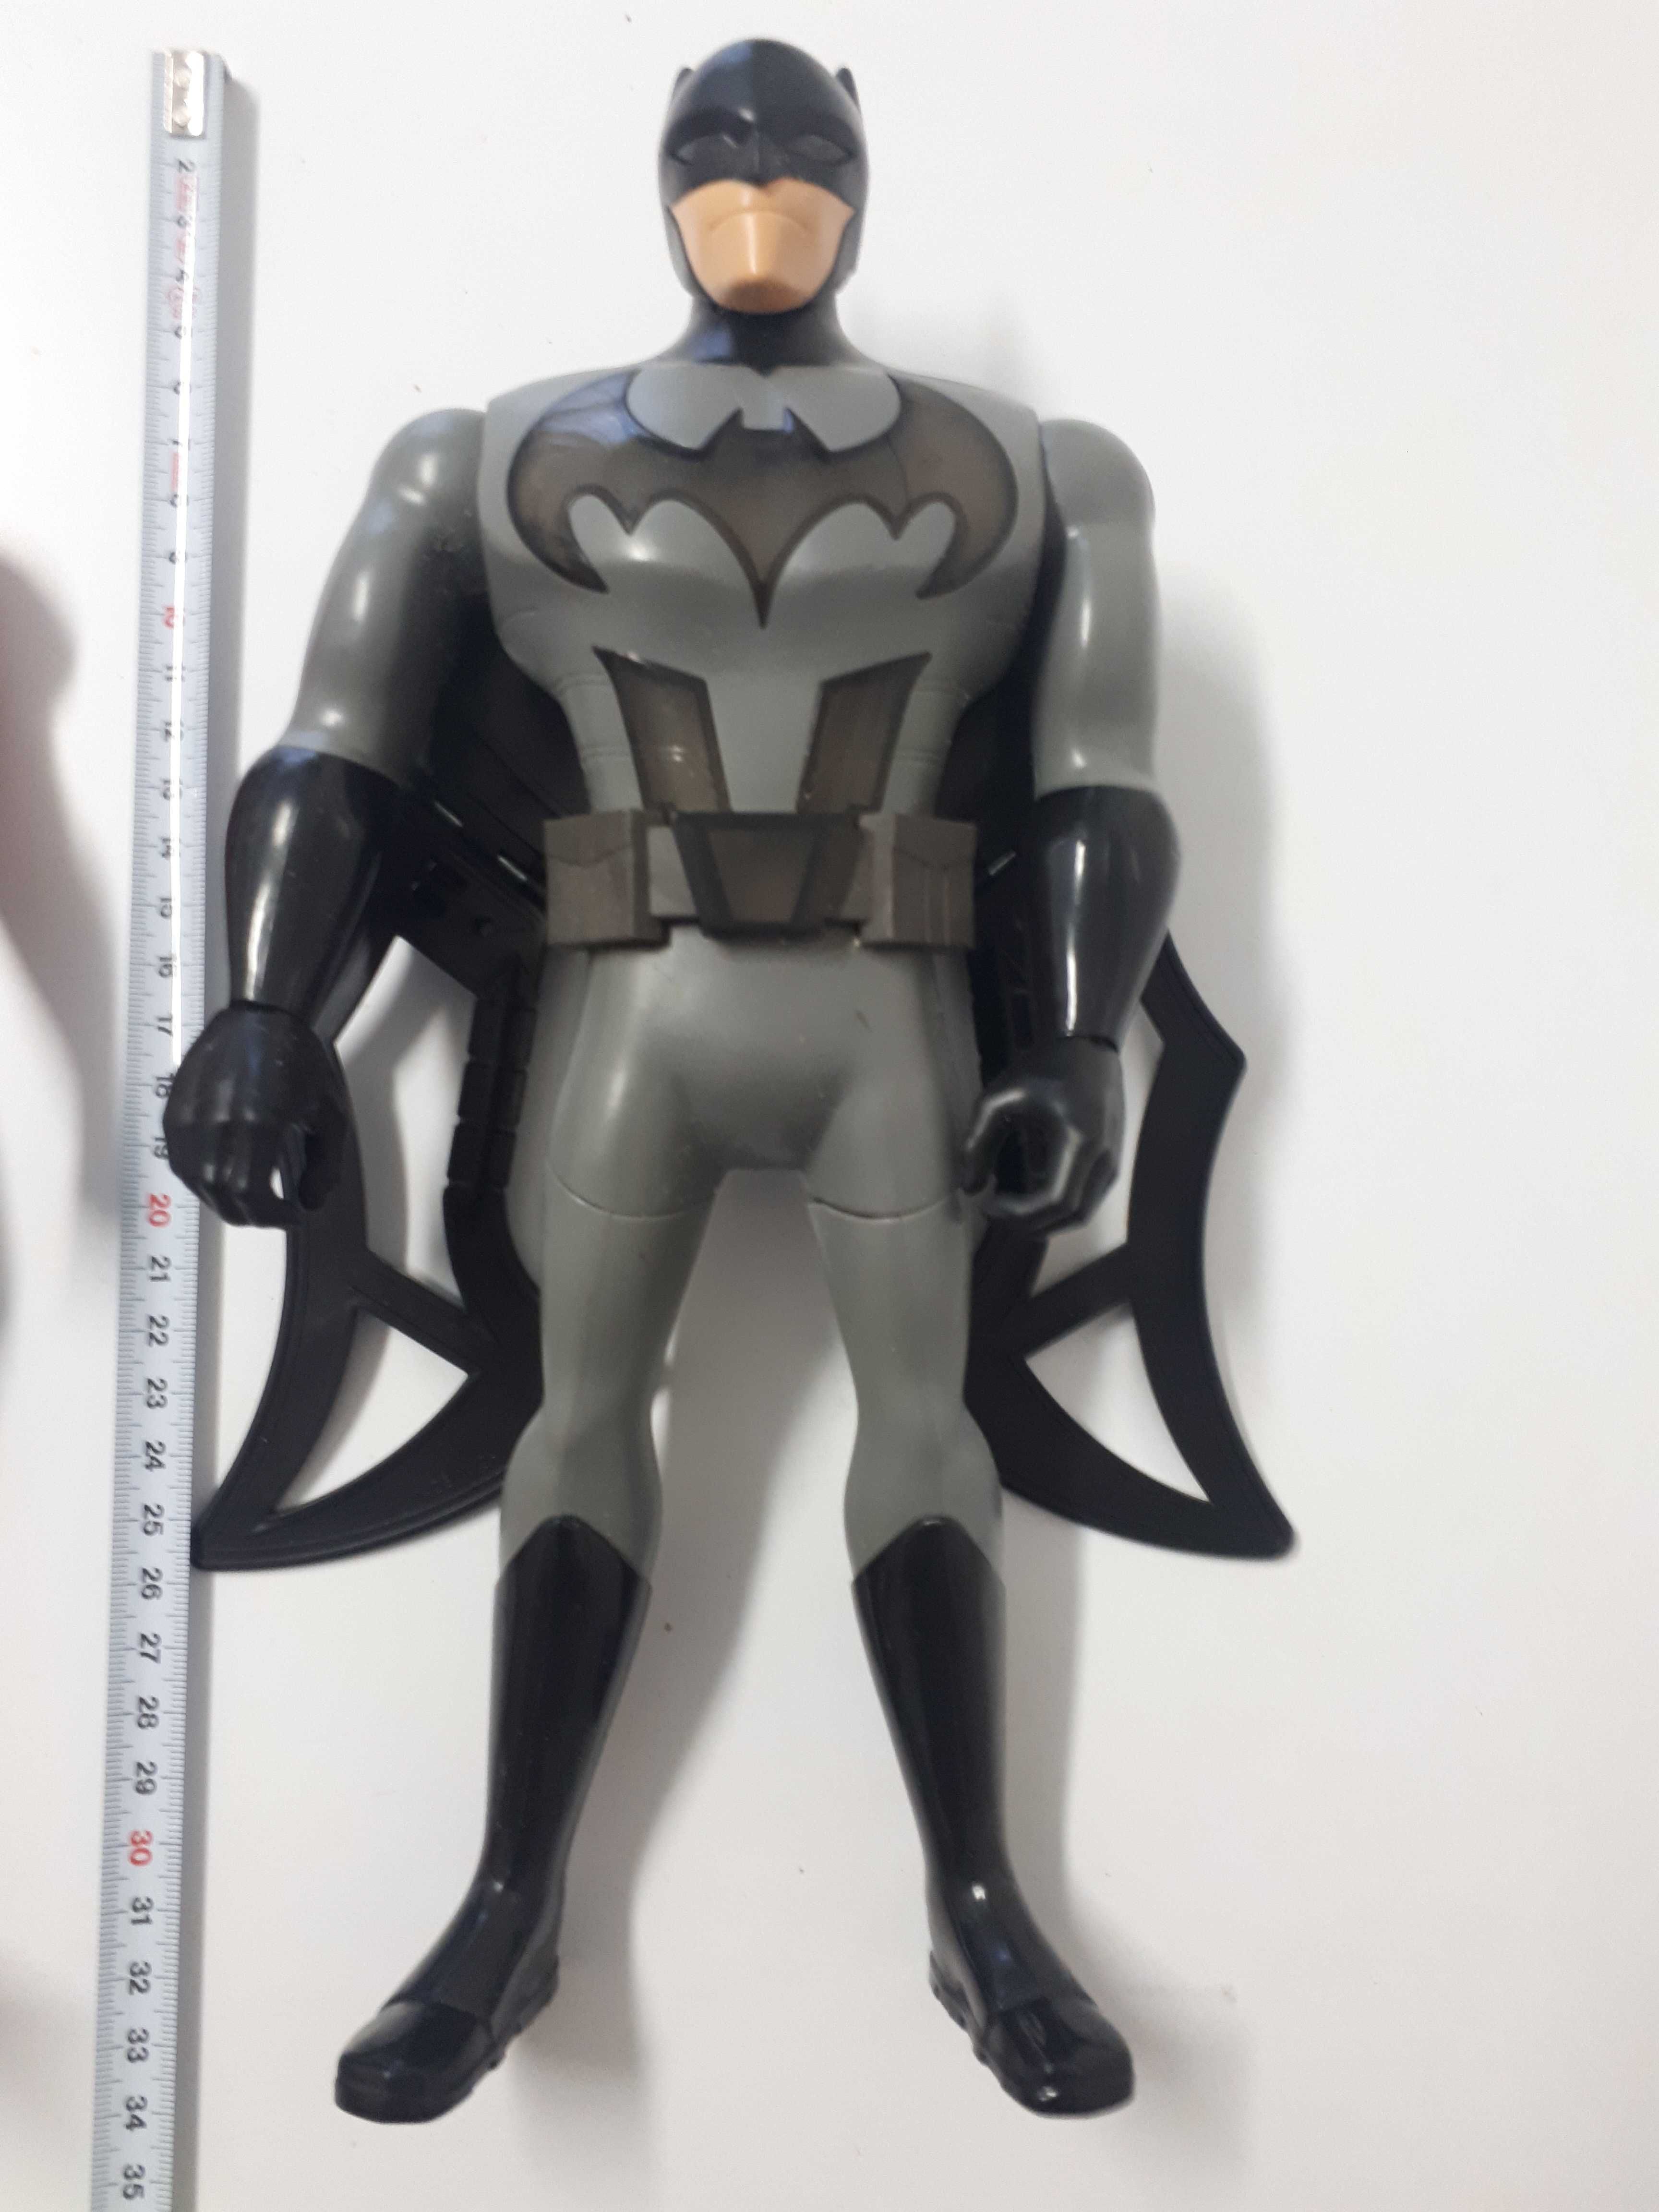 Boneco do Homem Aranha e do Batman